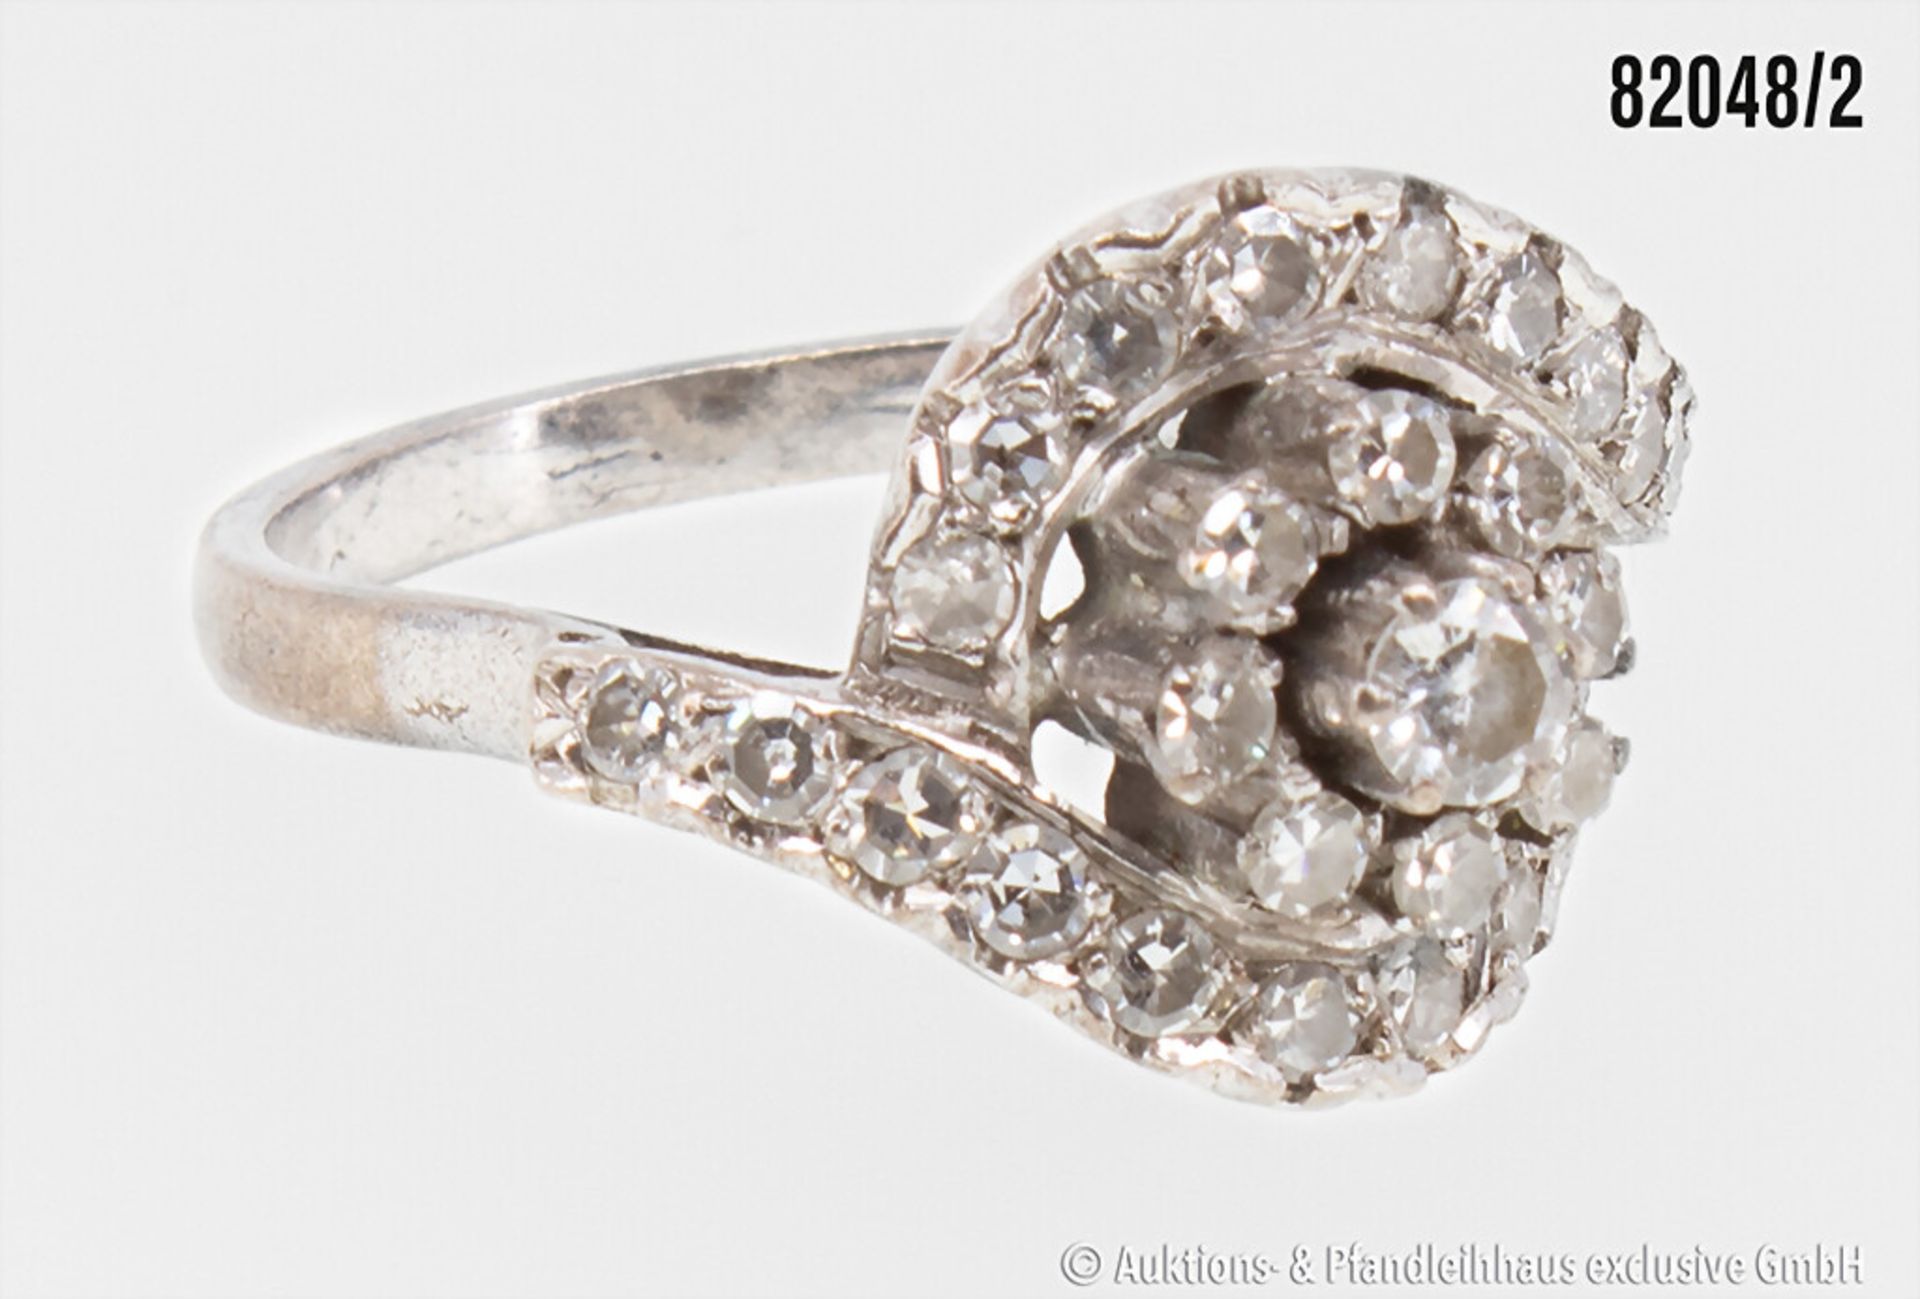 Ring, 585 Weißgold, mit einem Brillanten ca. 0,15 ct. sowie weiteren Diamanten, zus. ... - Image 2 of 2